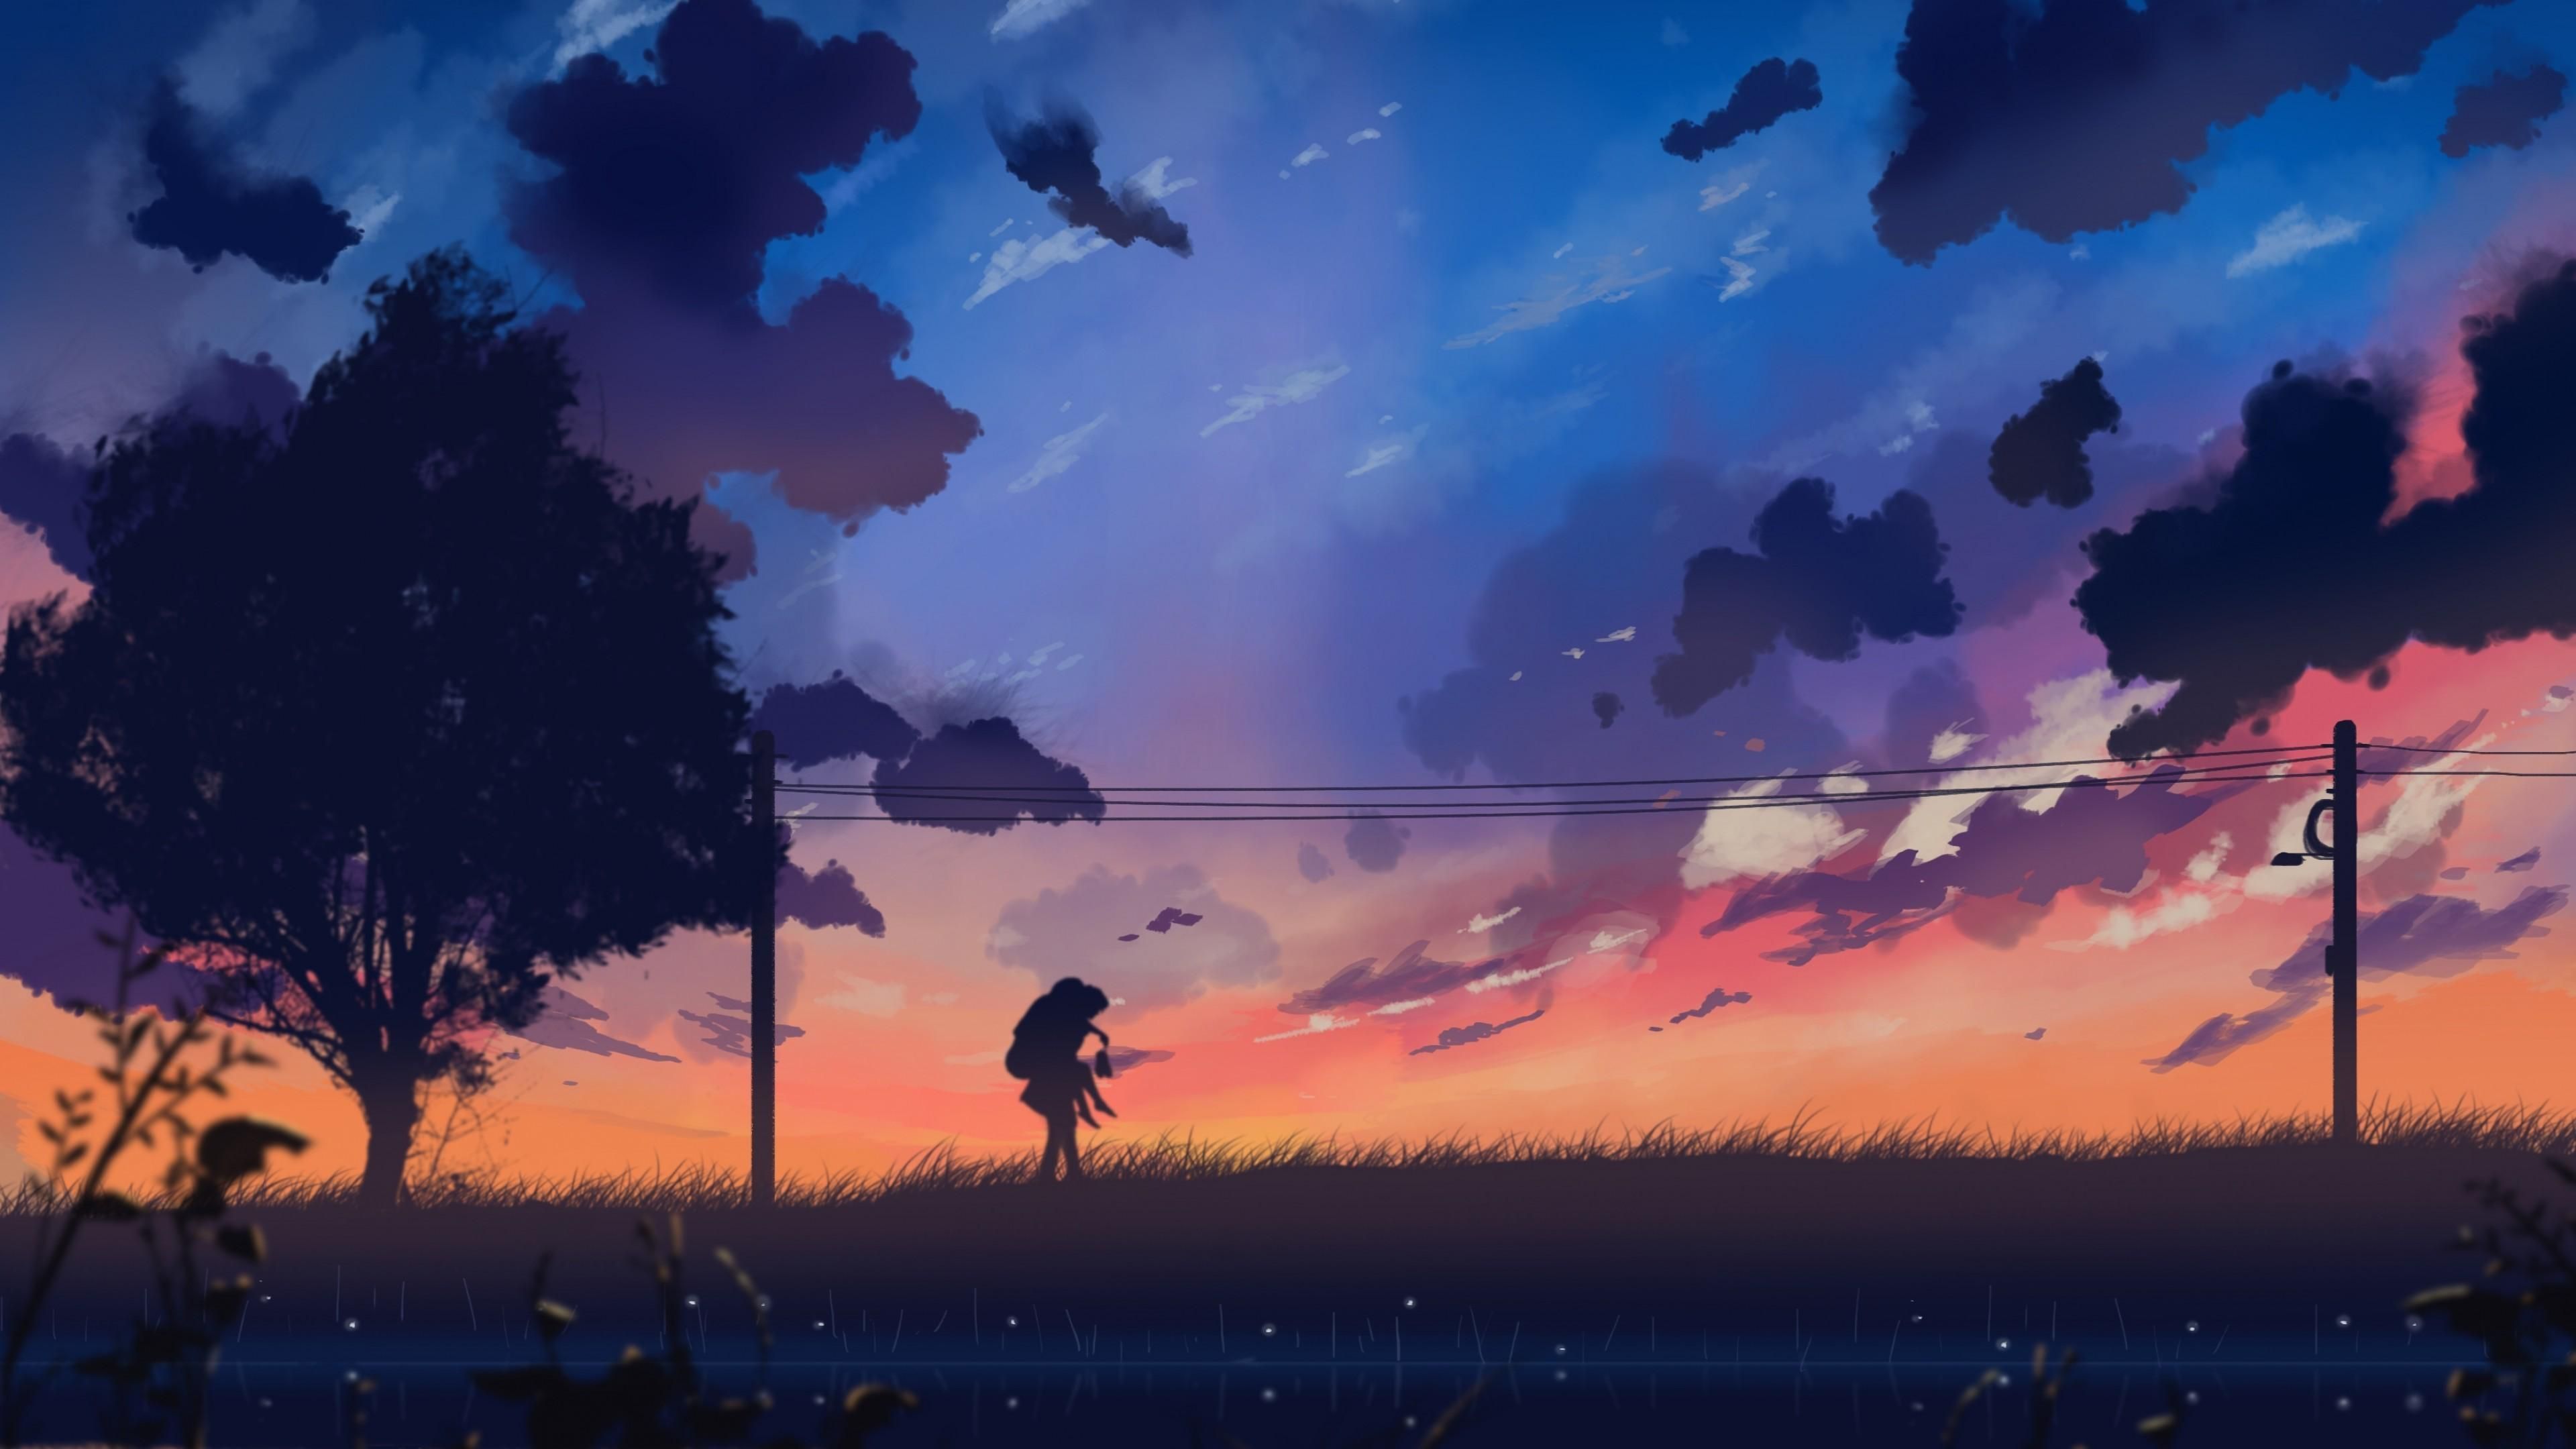 Aesthetic Anime Landscape Wallpaper